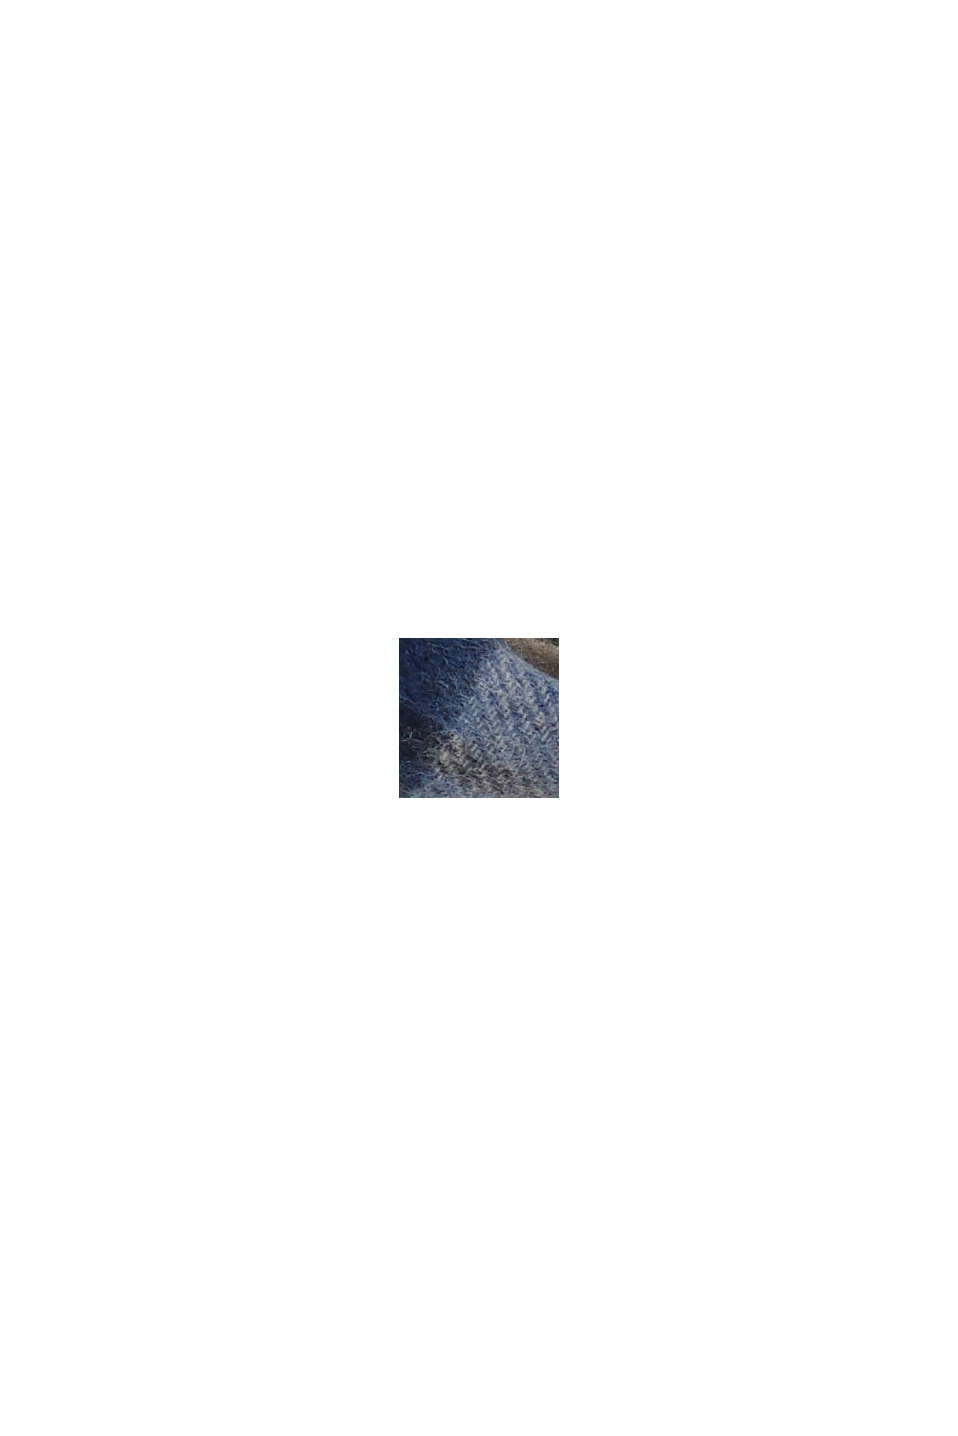 De lana/cachemir: bufanda con diseño de cuadros, DARK BLUE, swatch